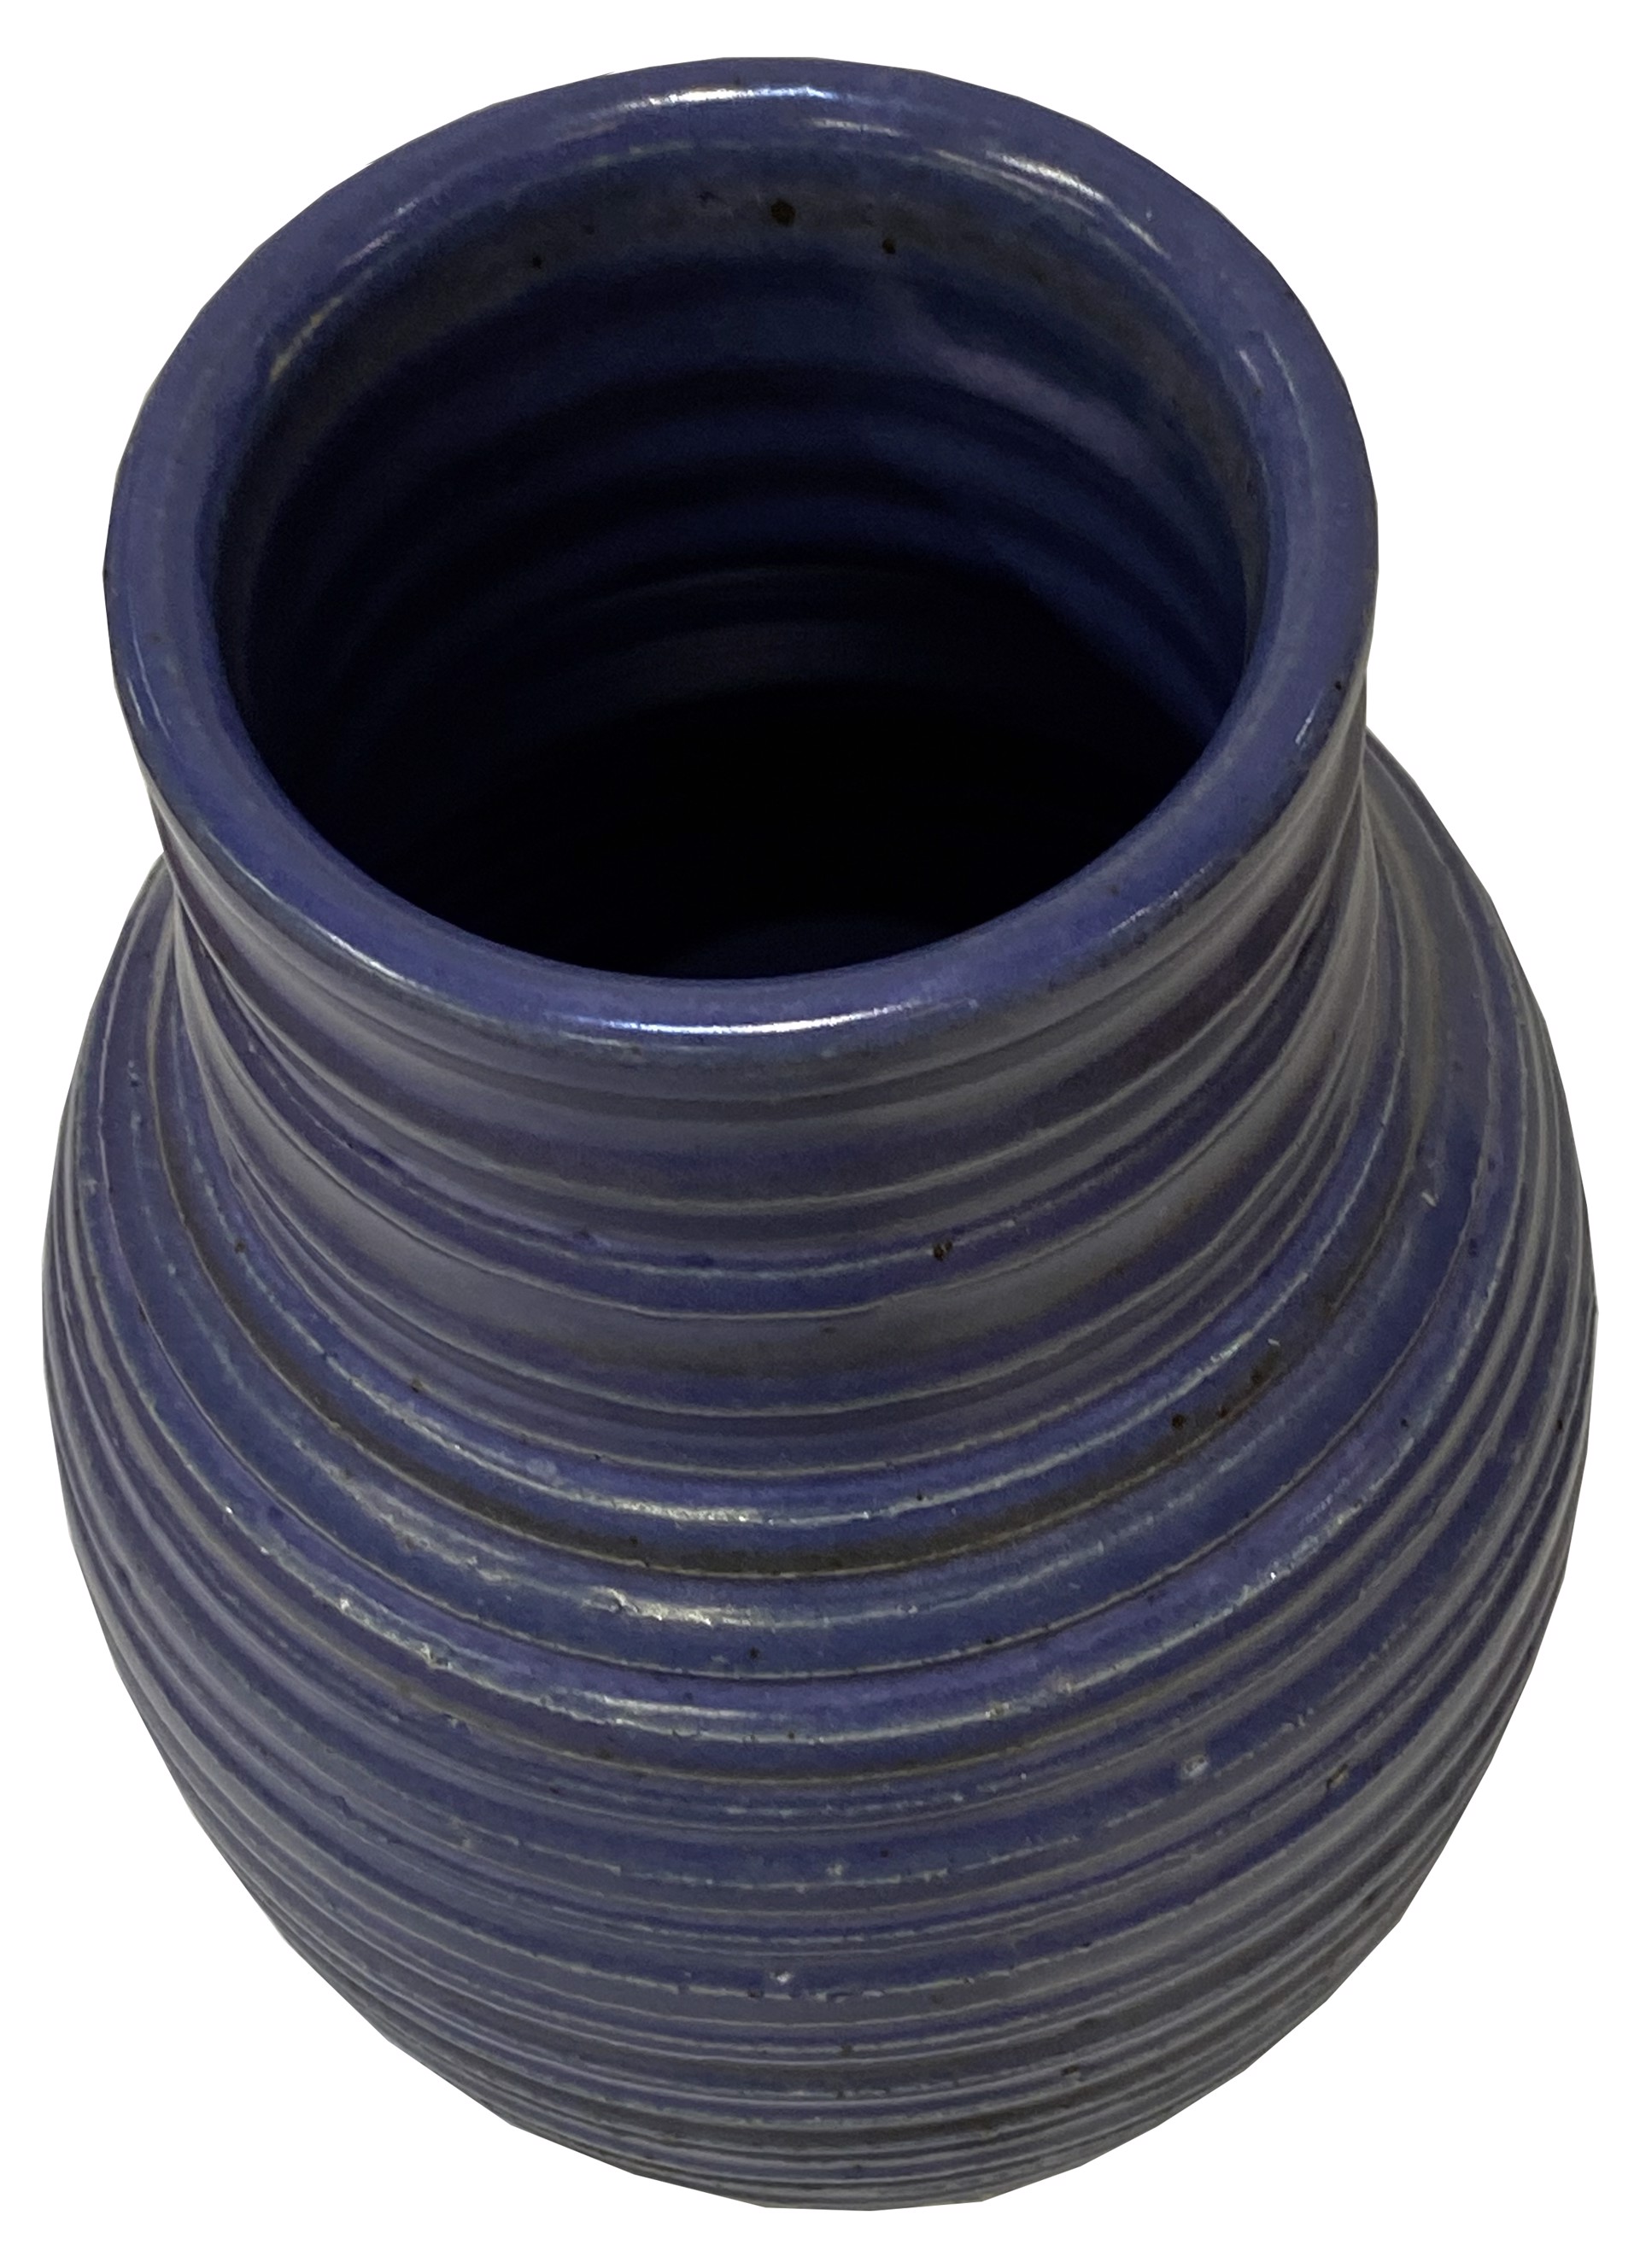 Ceramic Vase by Paul Nash